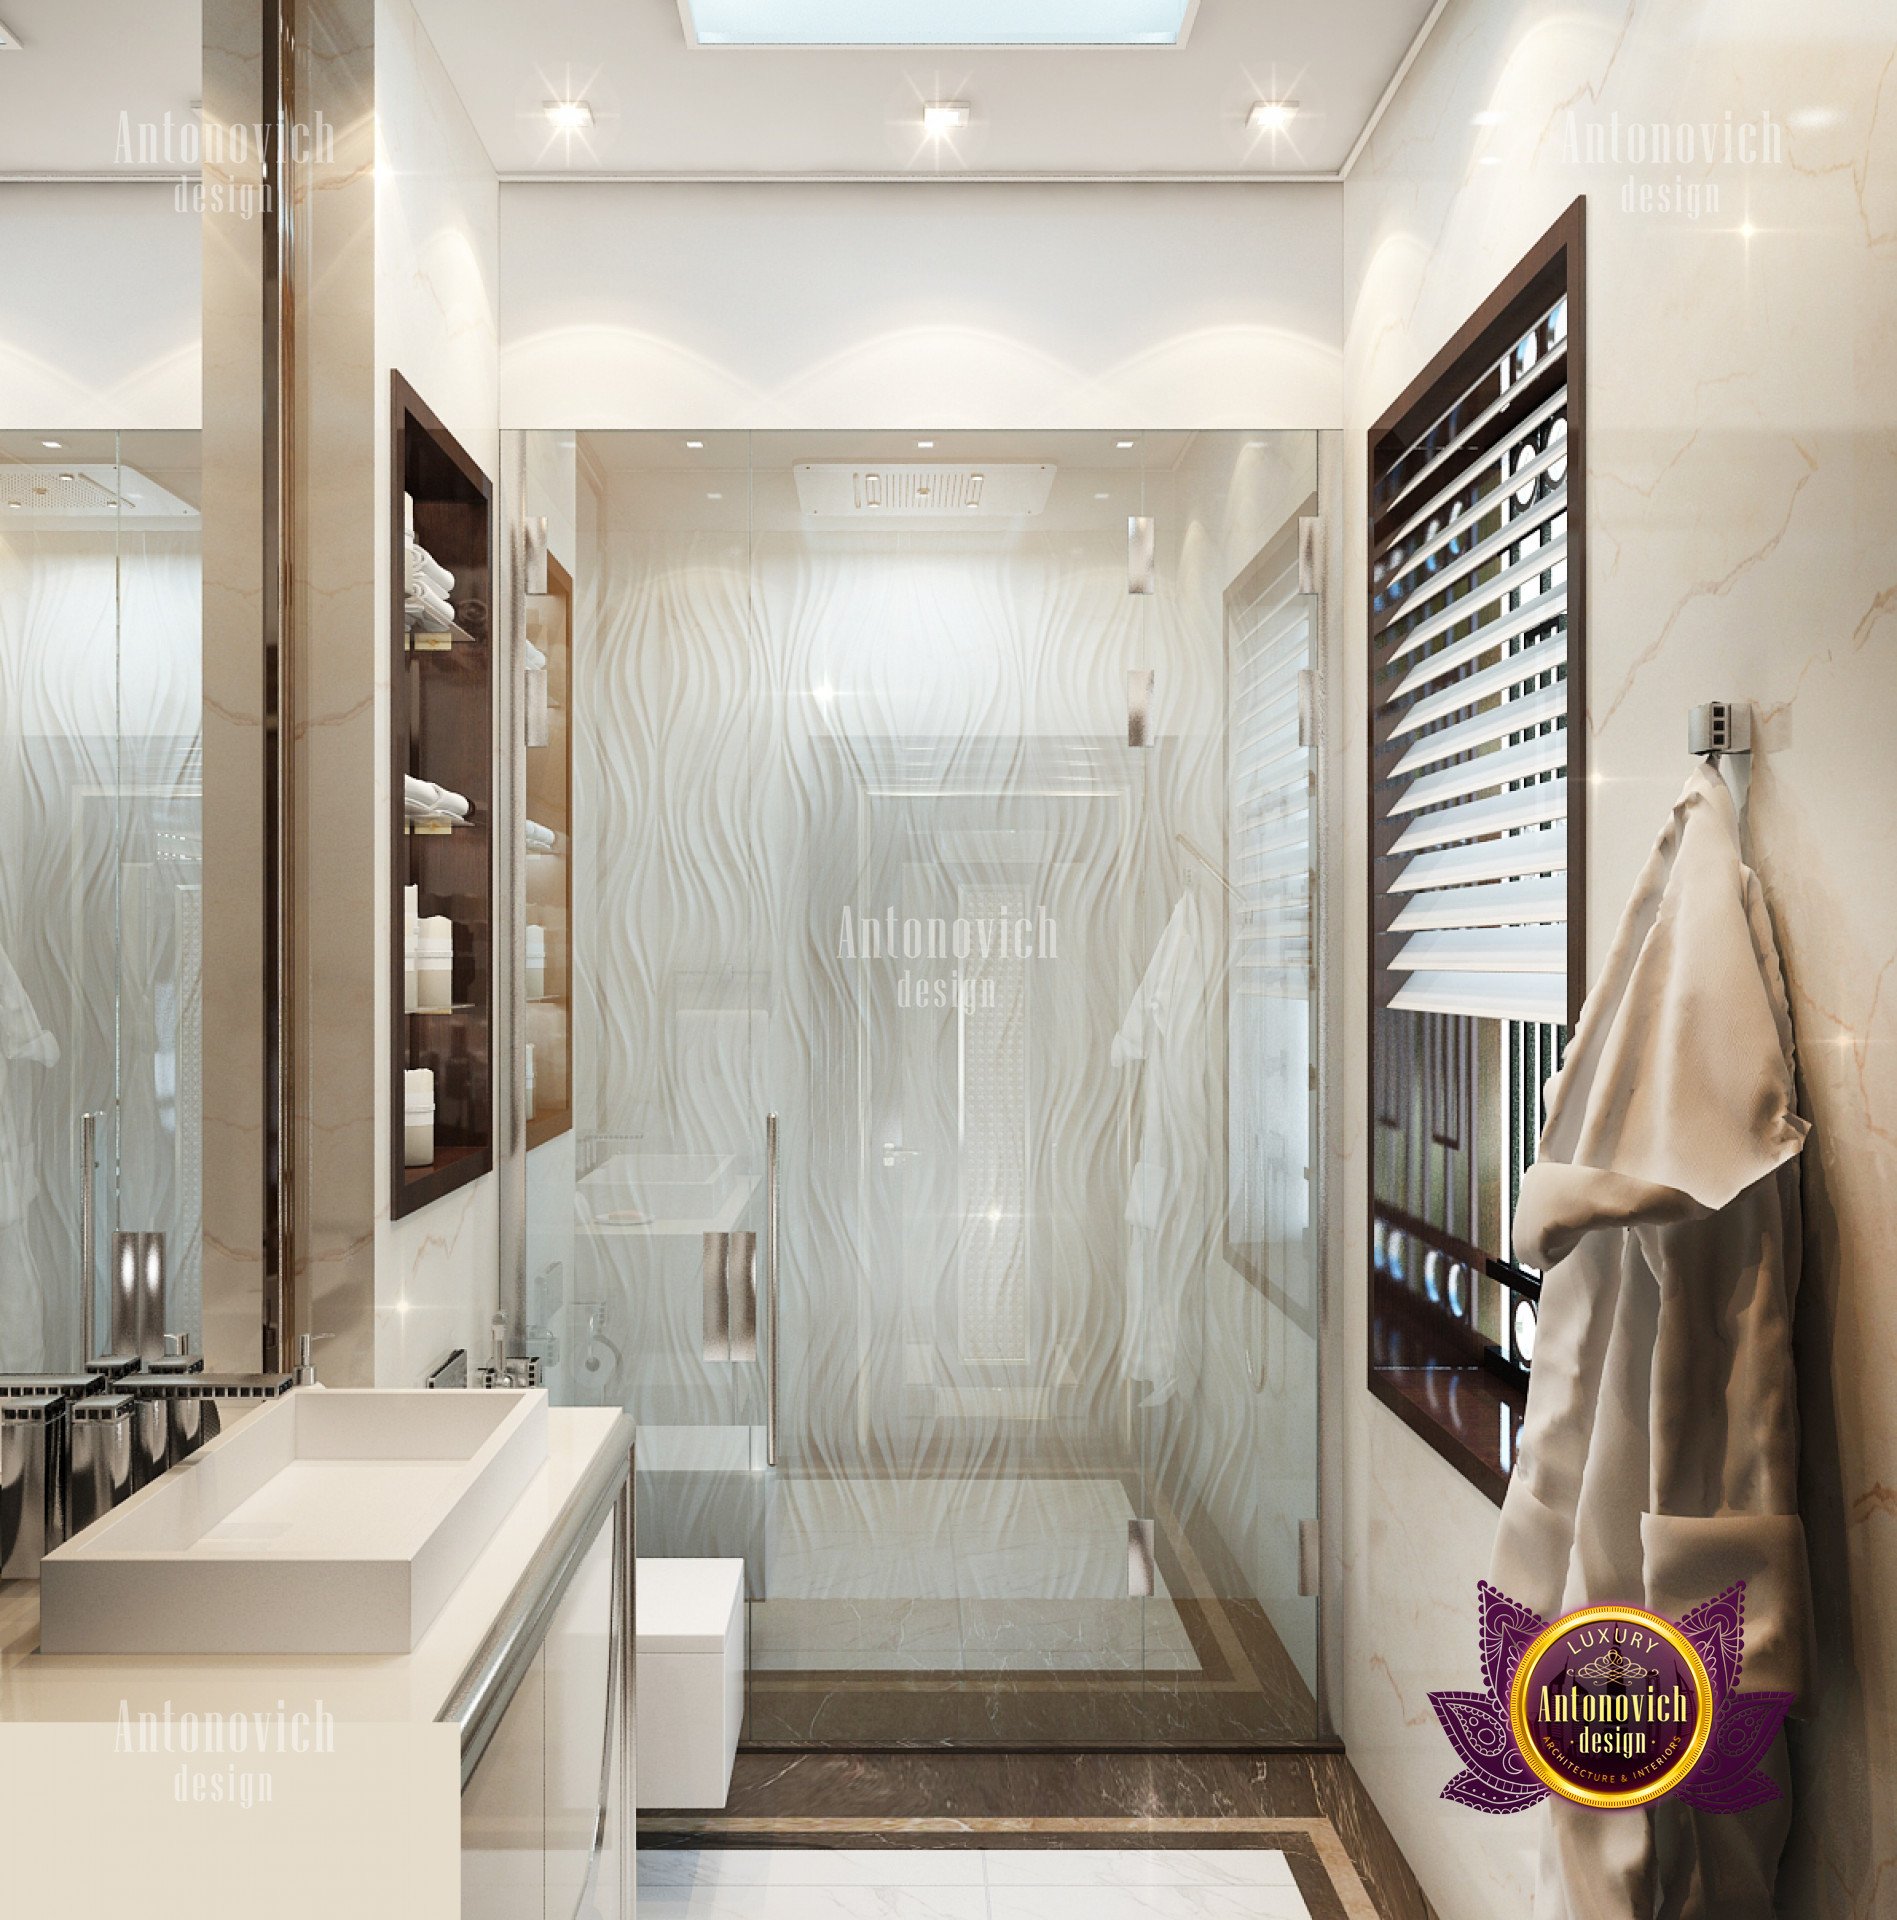 Superb Bathroom interior decor - luxury interior design ...